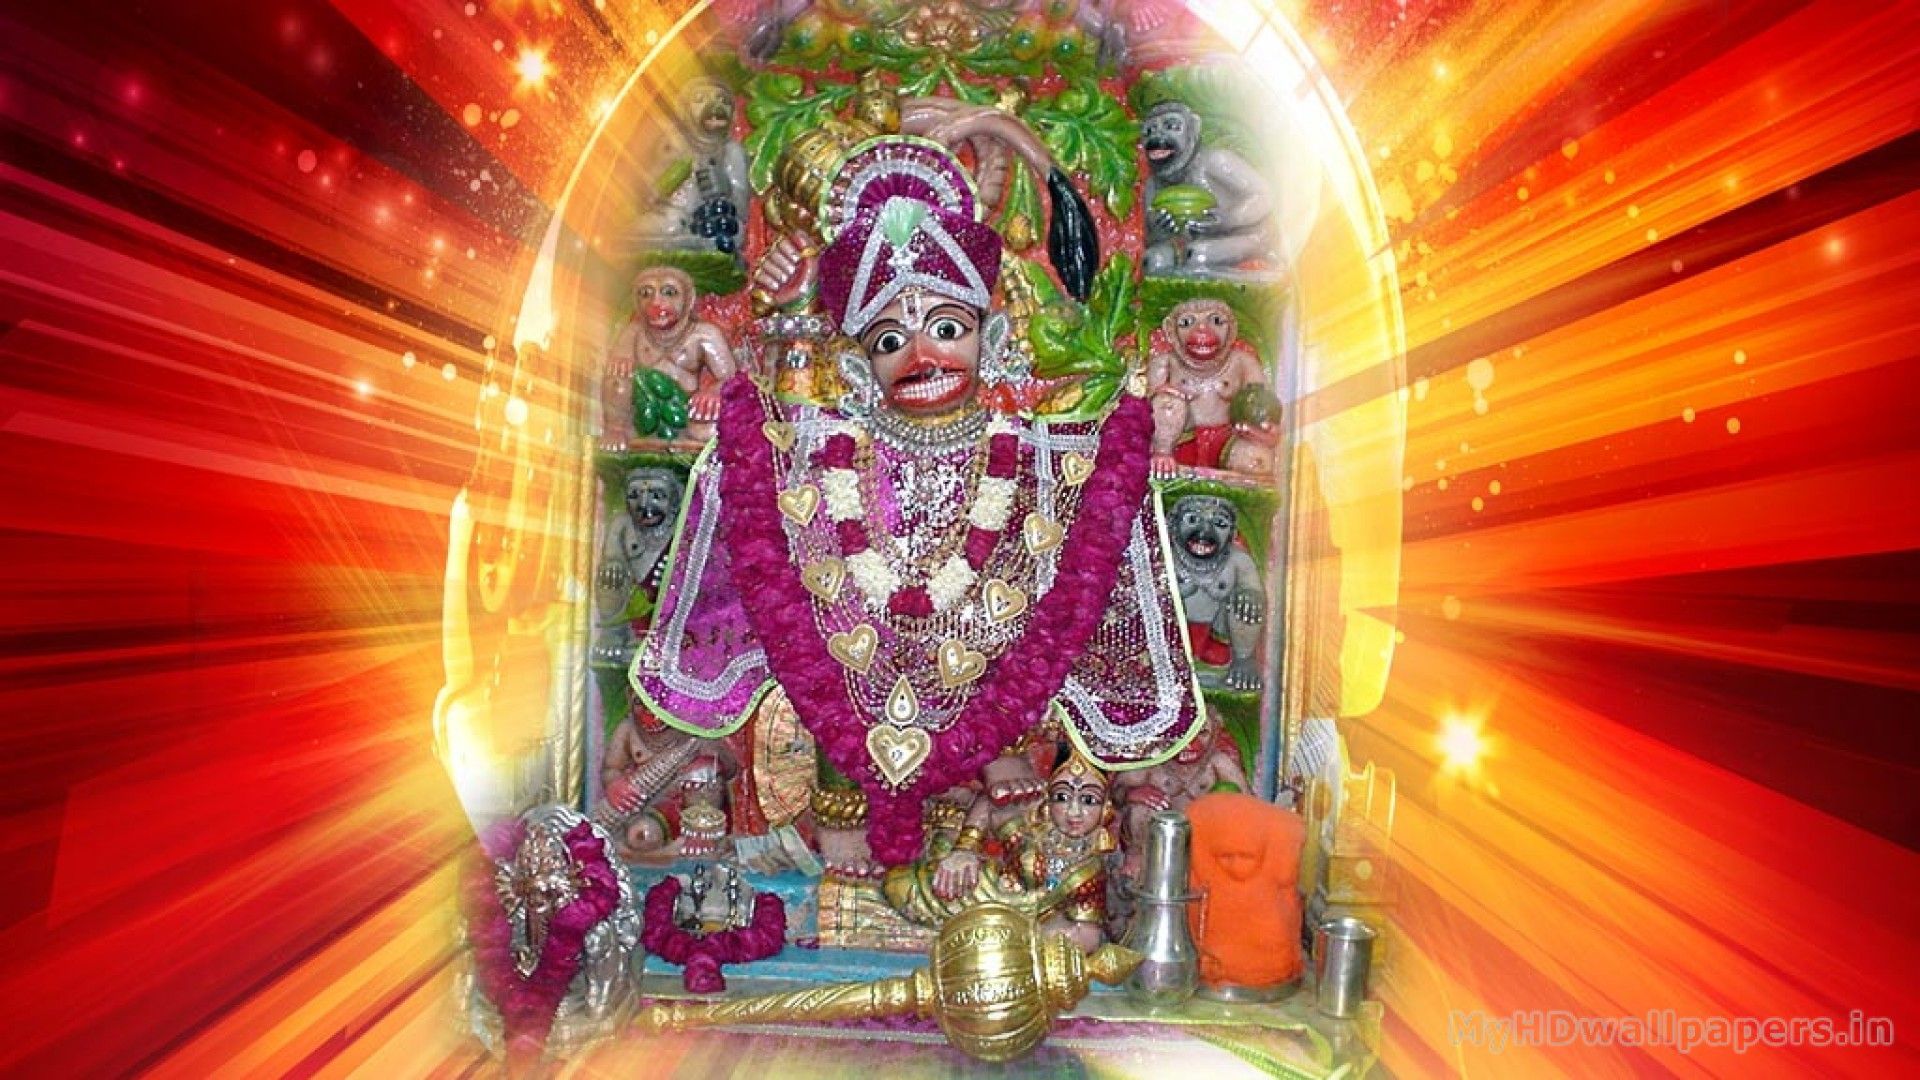 Click here to download in HD Format >> Sarangpur Hanuman Wallpaper